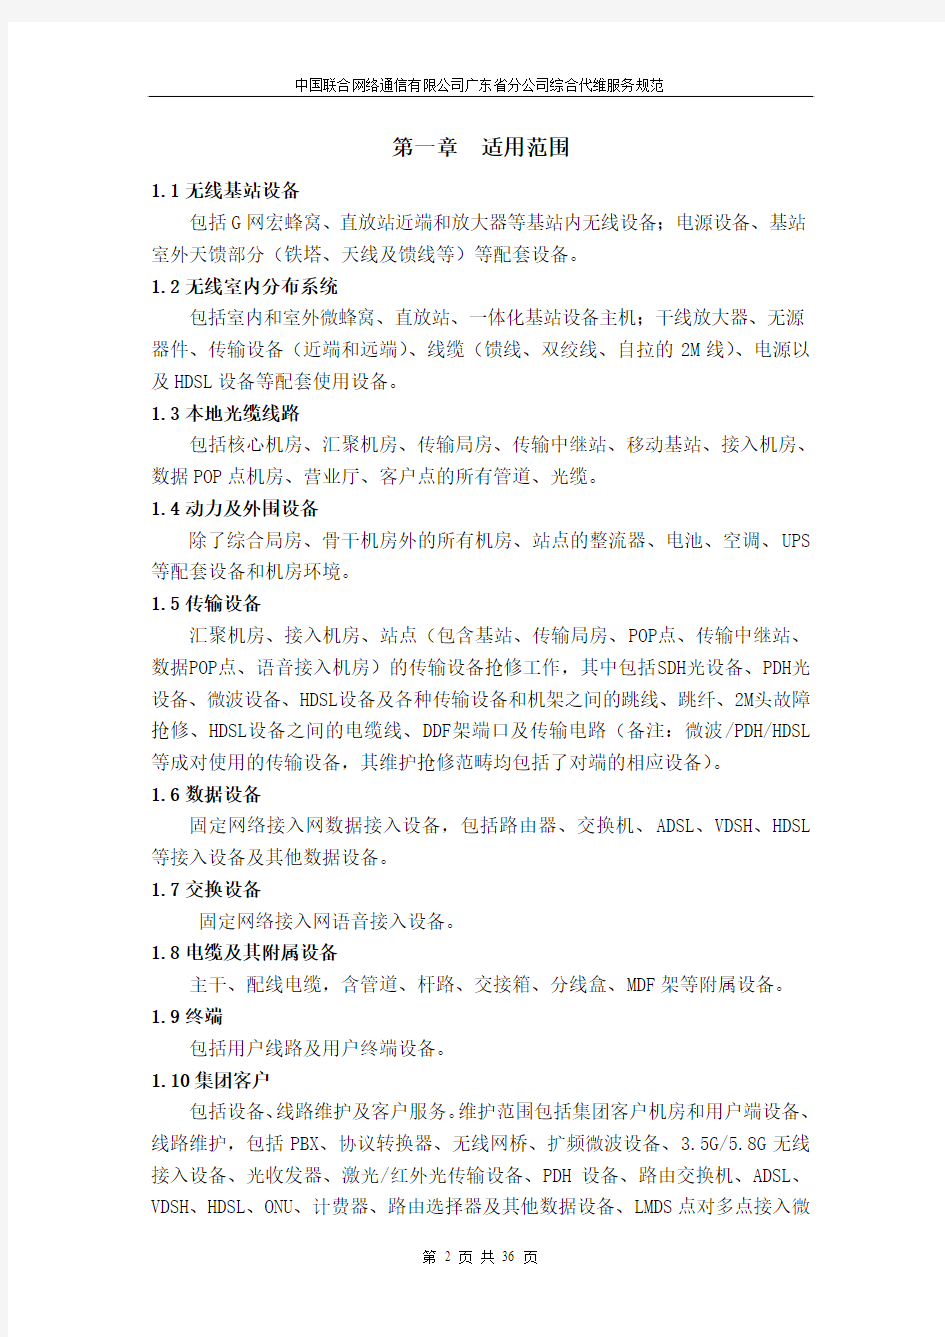 中国联合网络通信有限公司广东省分公司综合代维服务规范